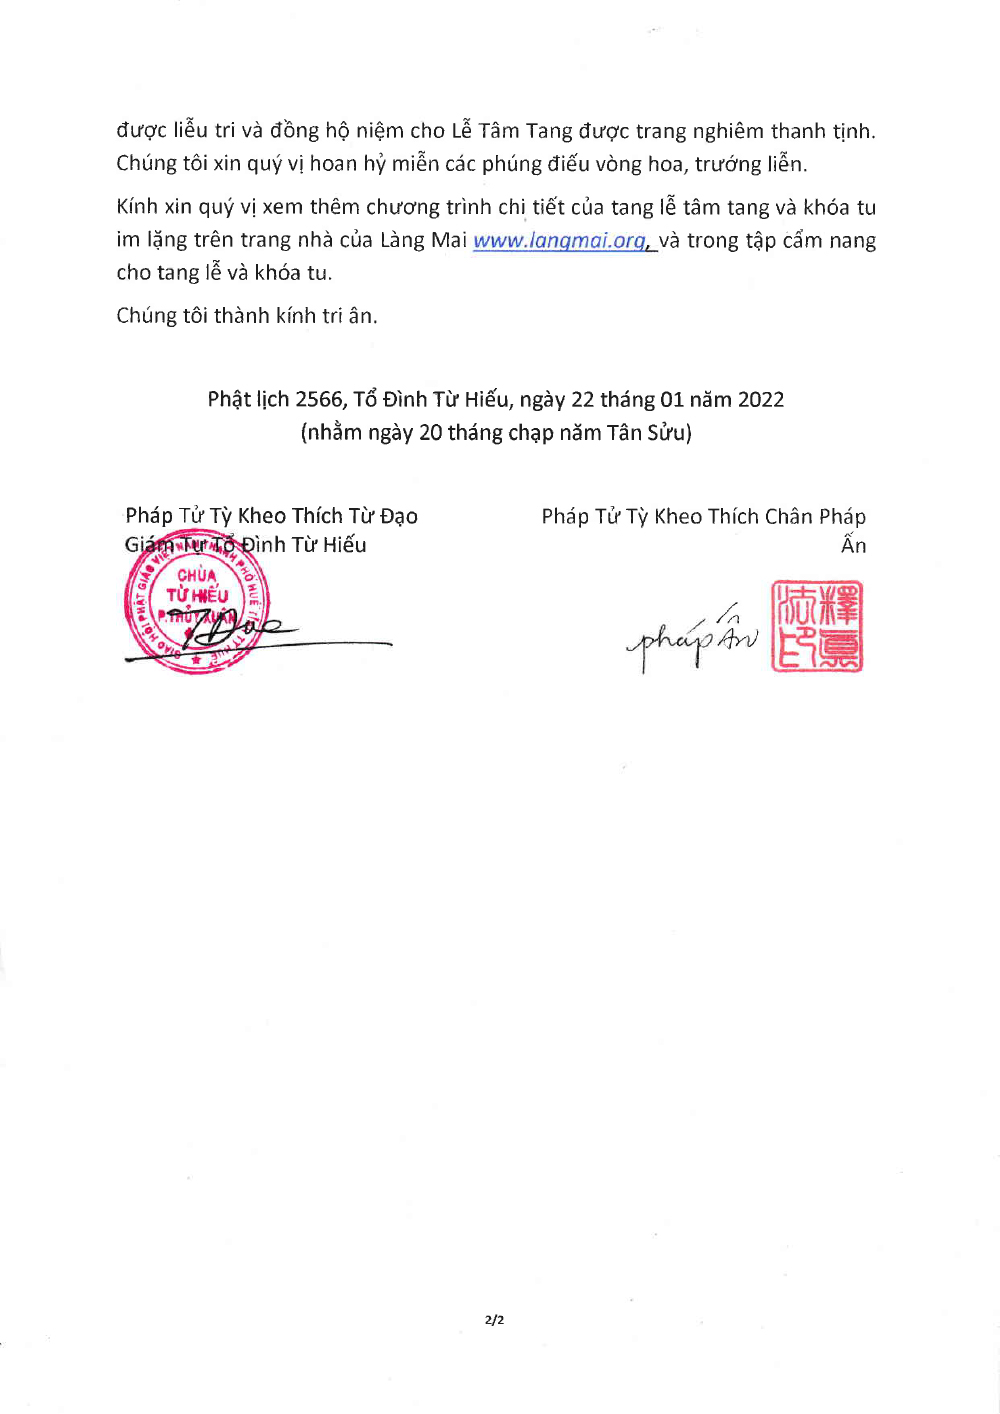 Thong Bao Di Huan final w Stamp 2